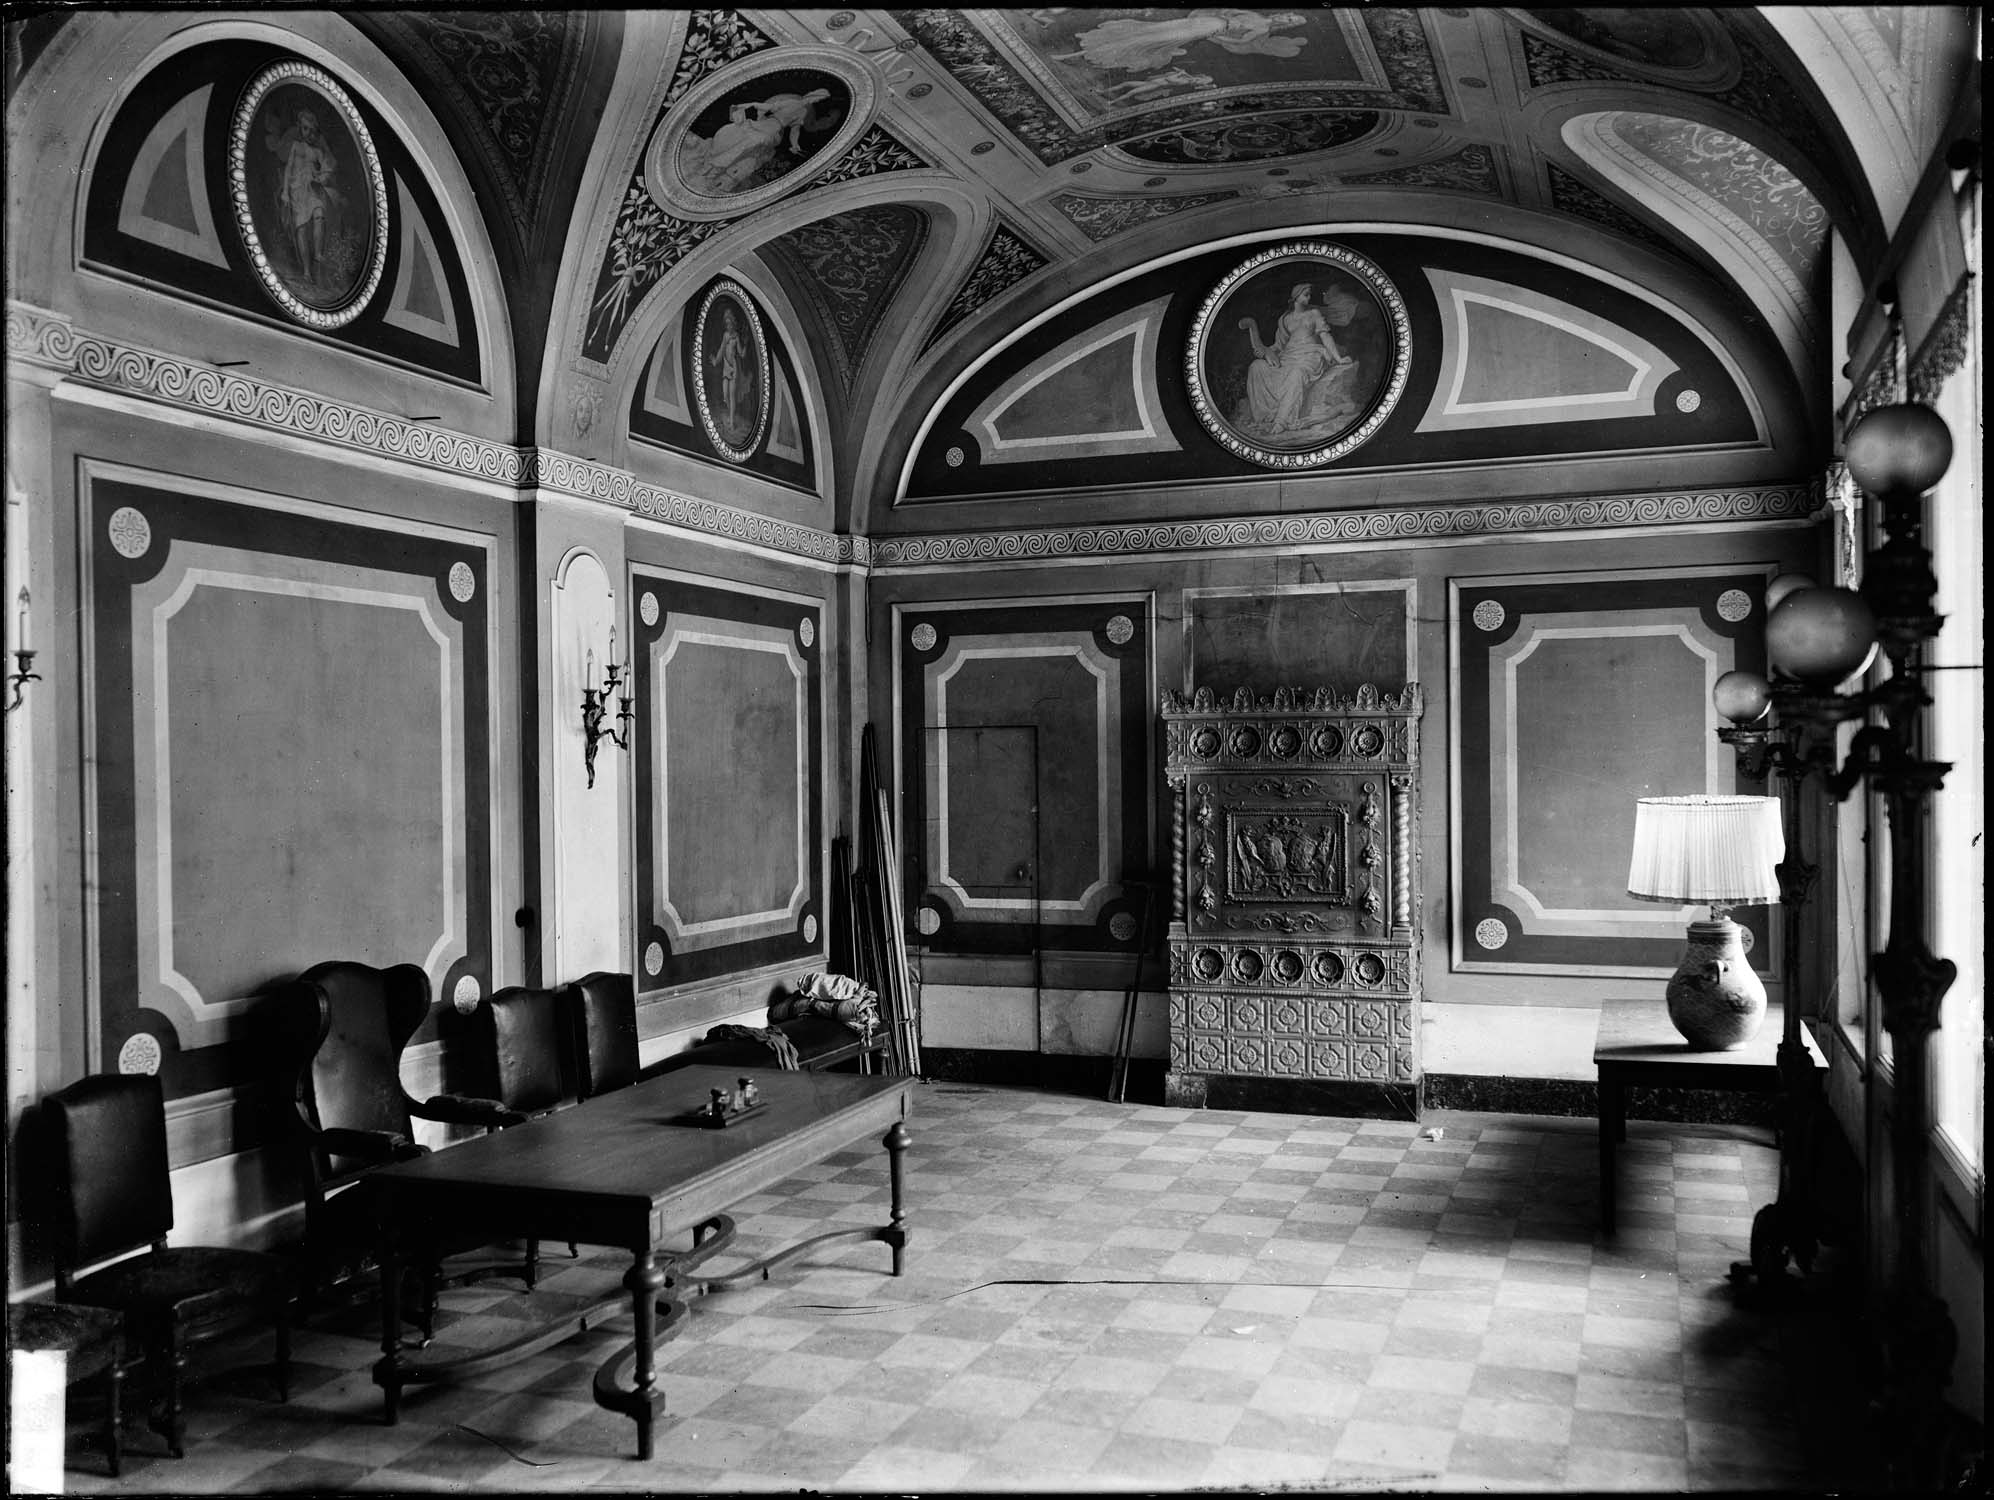 La salle
pompéienne au début du XXème siècle, à l’époque de l’ambassade
d’Autriche-Hongrie.